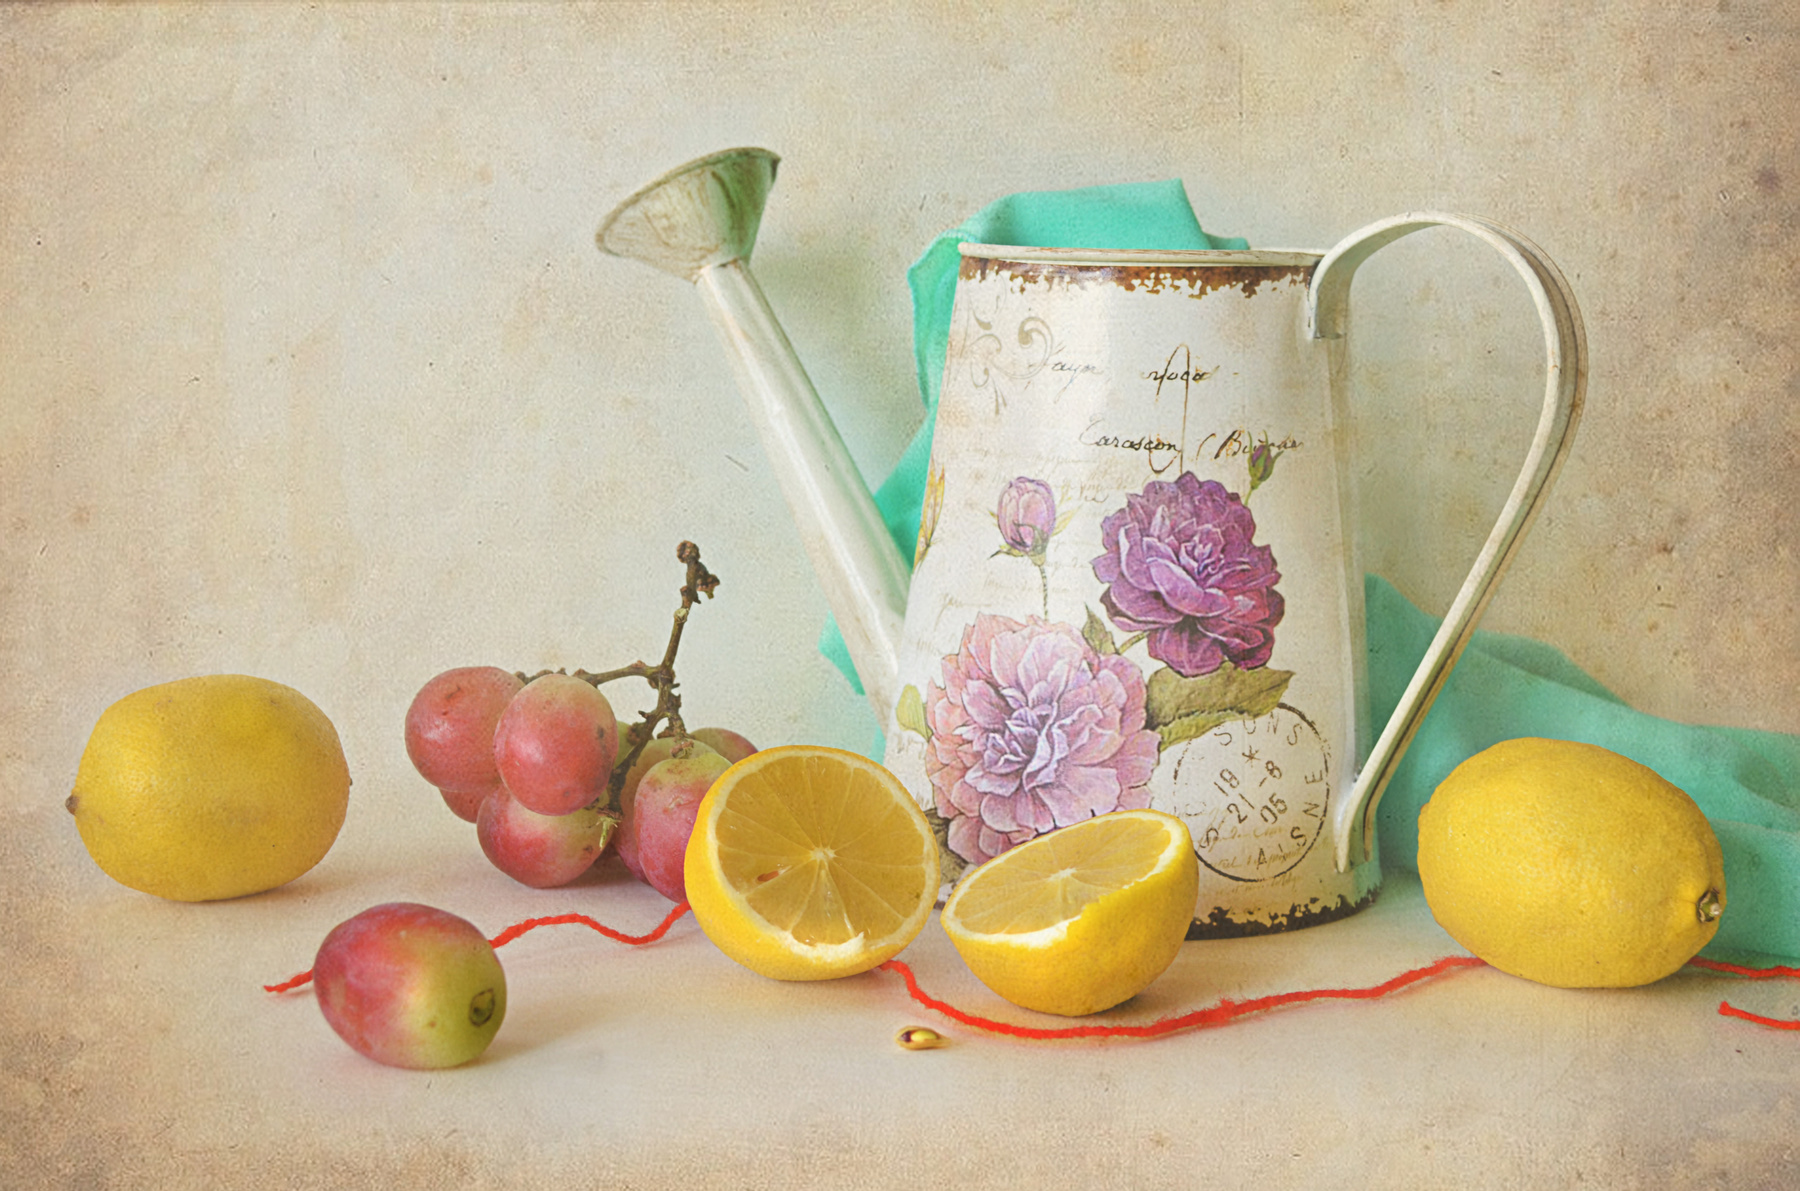 Слушая тишину... натюрморт стол предметы лейка цитрусы лимон виноград драпировка семечка верёвочка красная лента